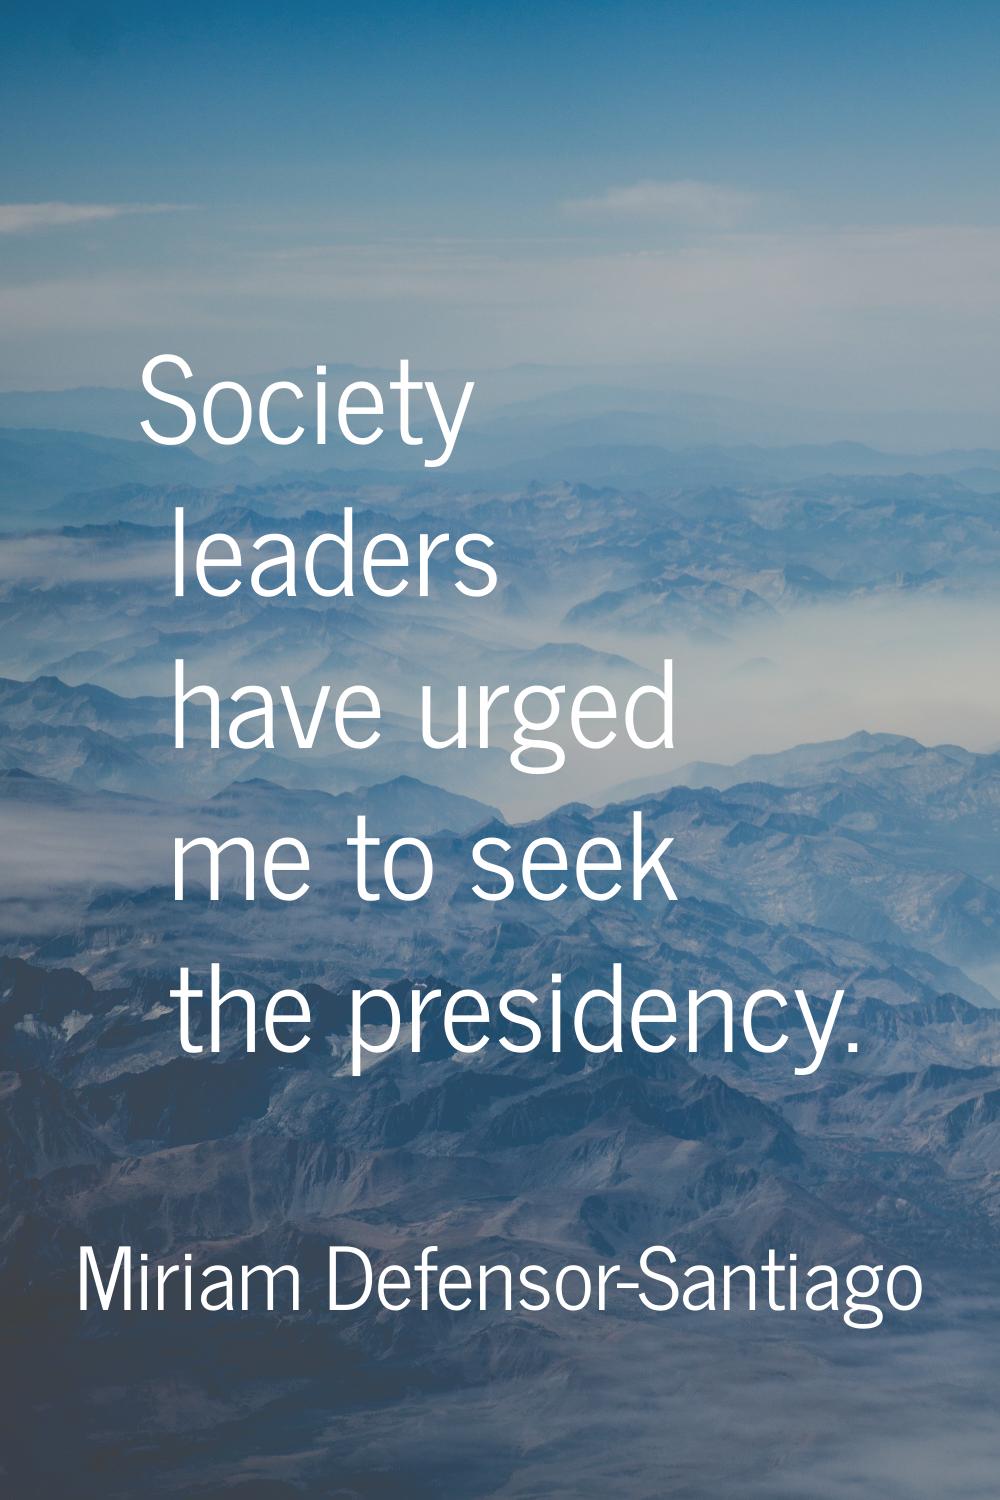 Society leaders have urged me to seek the presidency.